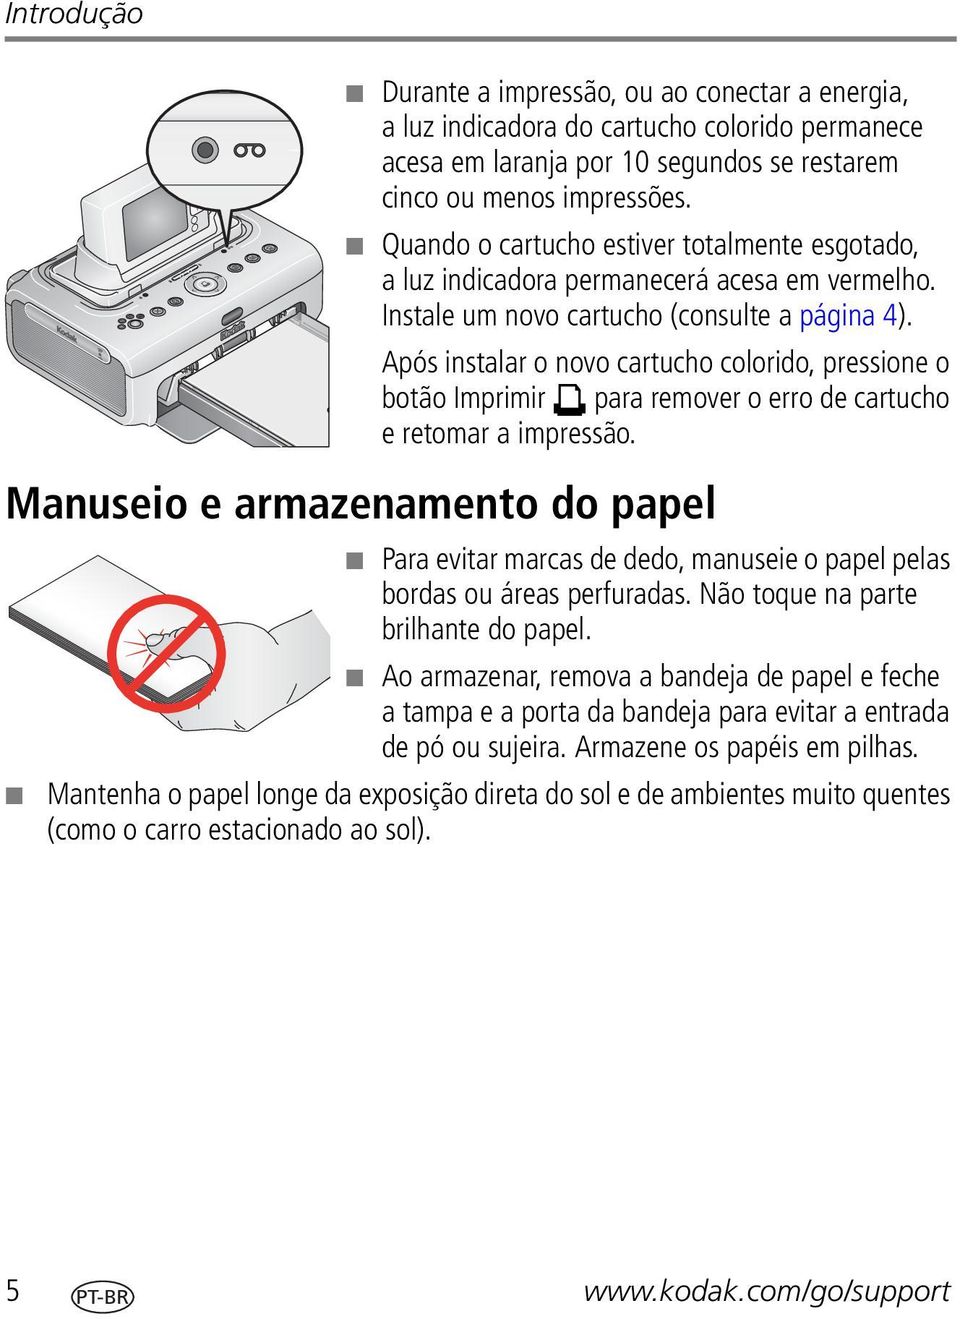 Após instalar o novo cartucho colorido, pressione o botão Imprimir para remover o erro de cartucho e retomar a impressão.